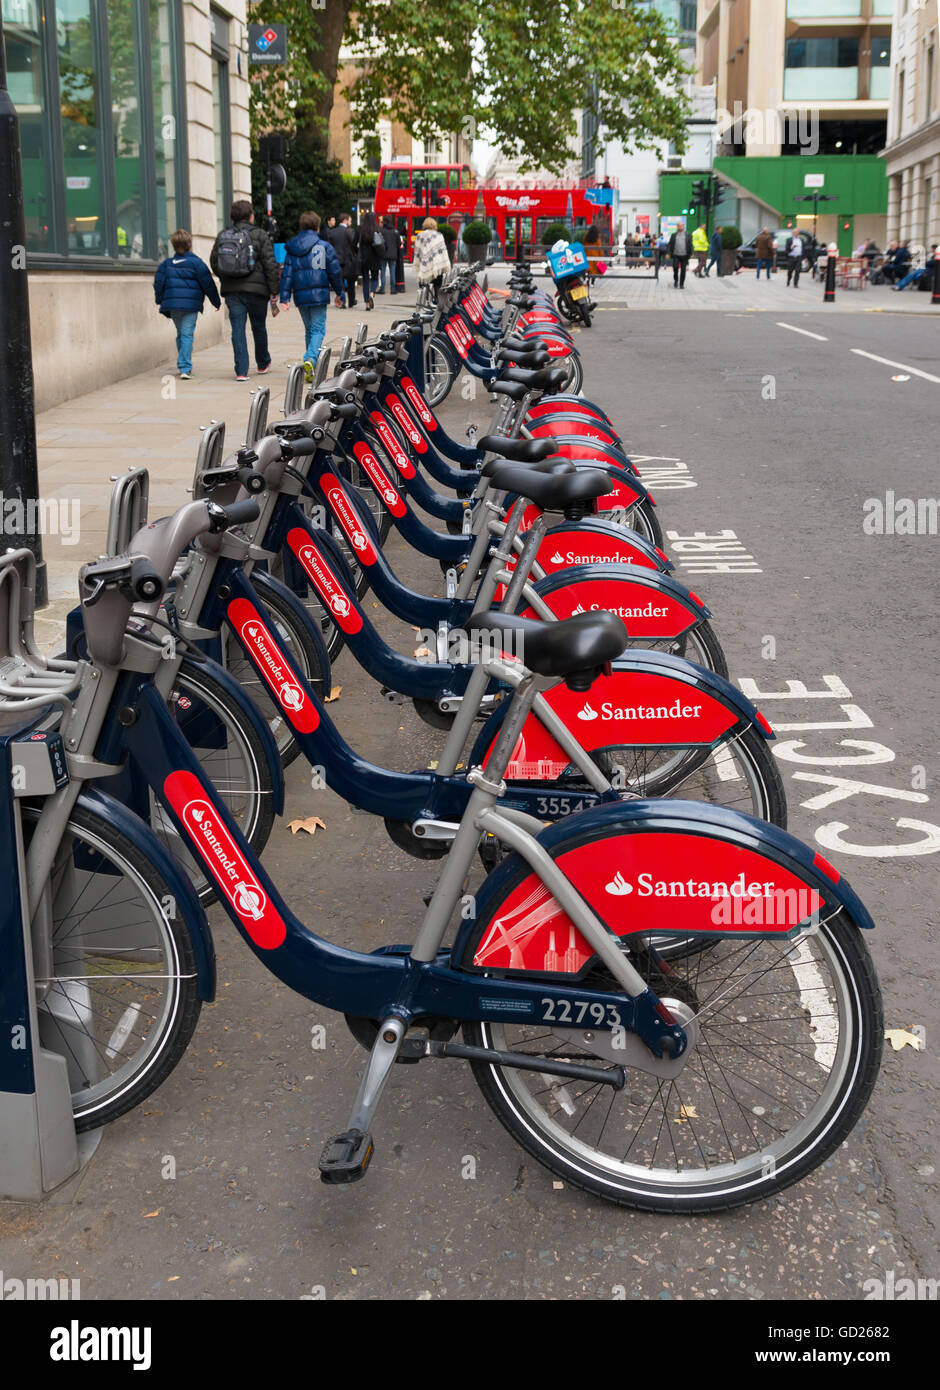 Londra, Inghilterra - 23 ottobre: Santander noleggio bici a noleggio in Londra. Questi cicli possono essere noleggiati in corrispondenza di una serie di posizioni aro Foto Stock